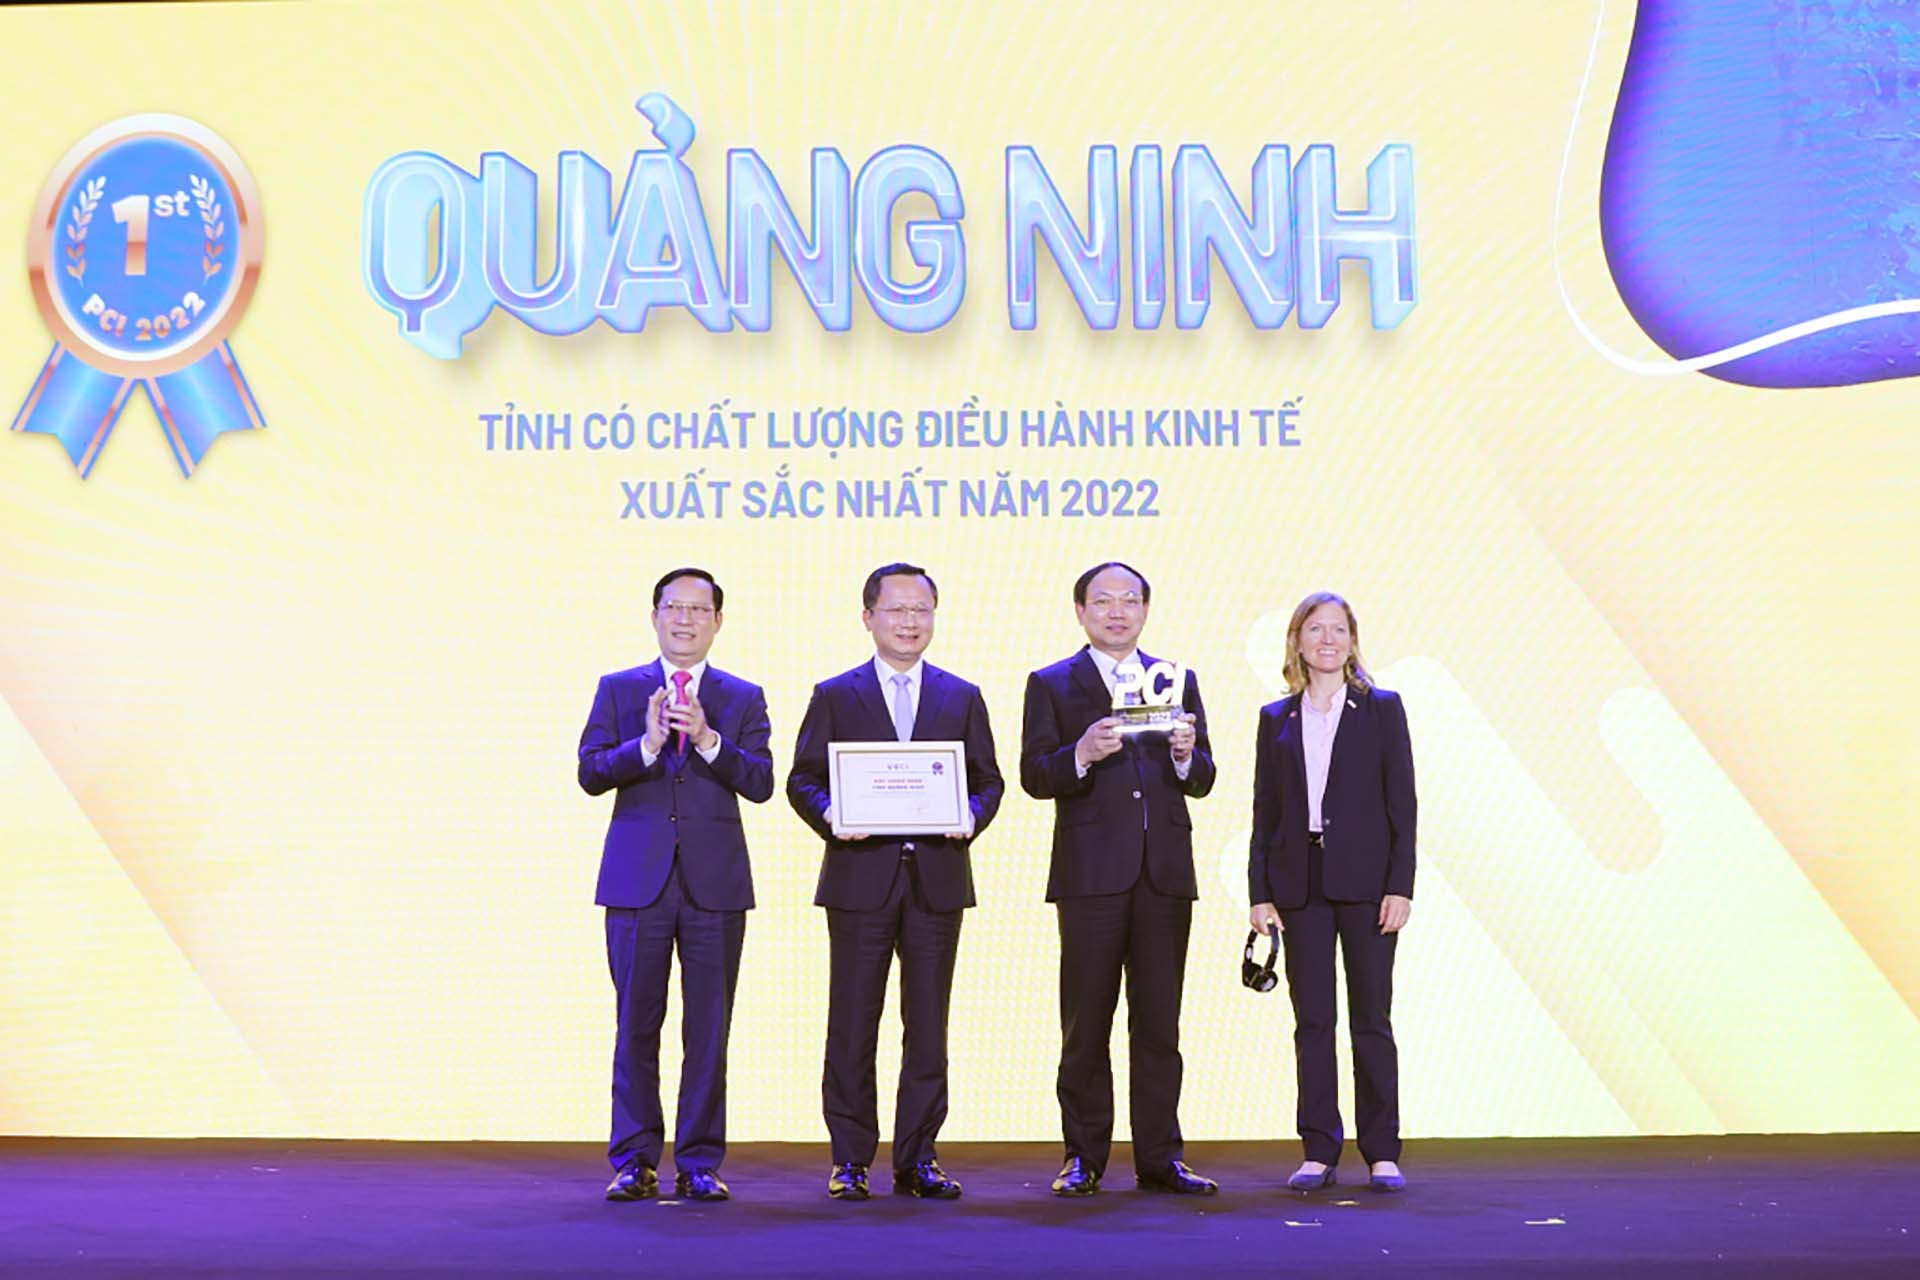 Lãnh đạo tỉnh Quảng Ninh nhận Cúp và Chứng nhận PCI 2022 - vinh danh 6 năm liền giữ vị trí quán quân. (Nguồn: Báo Quảng Ninh)